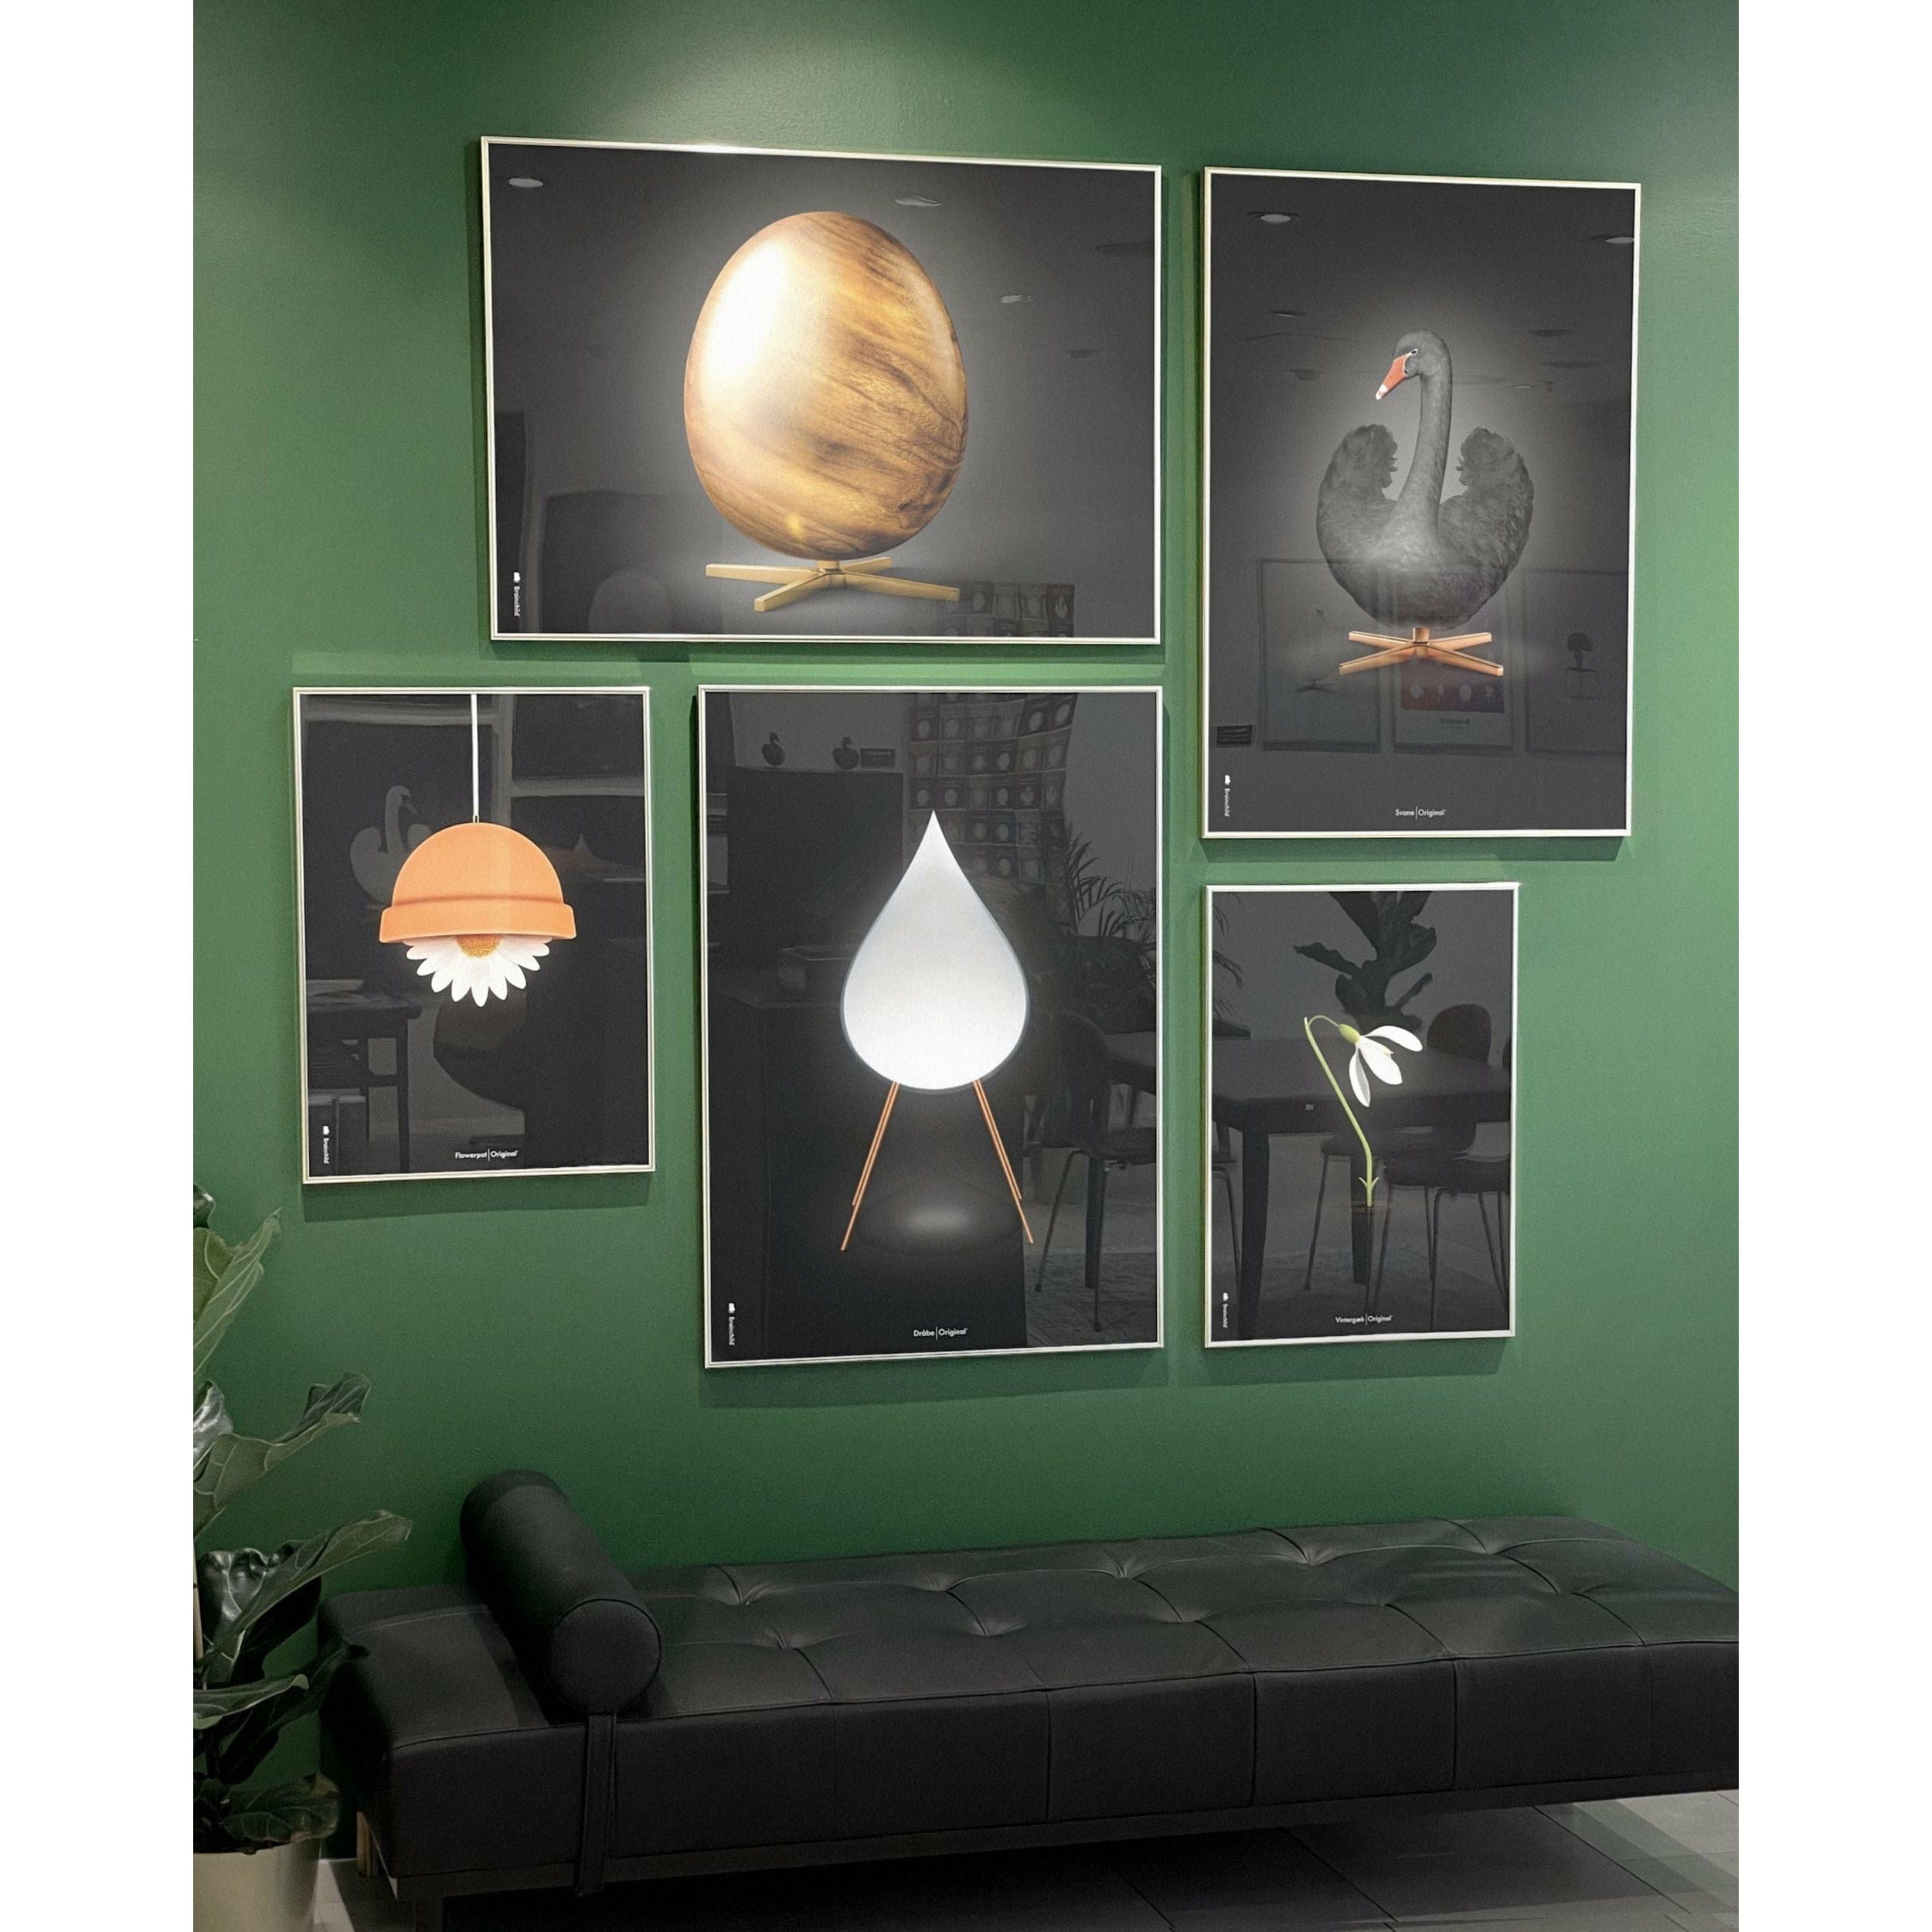 Brainchild Egg Cross Format Poster, Frame Made of Light Wood 70 X100 cm, svart